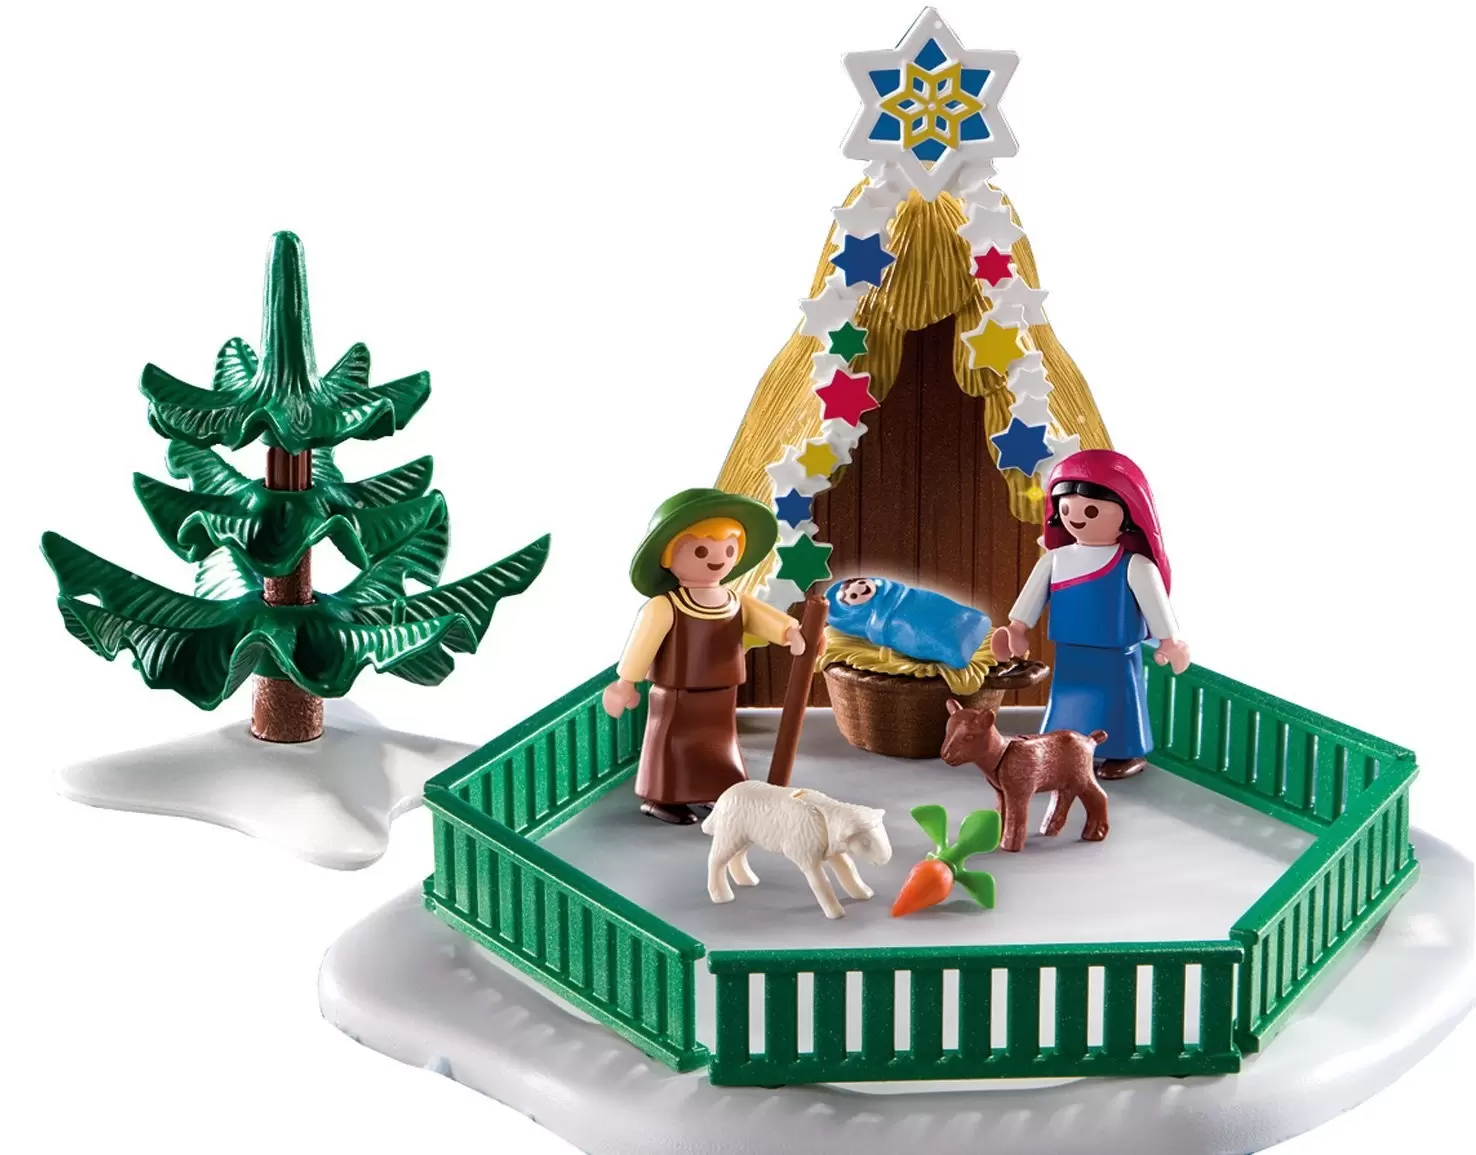 Playmobil de Noël - Scène de la nativité